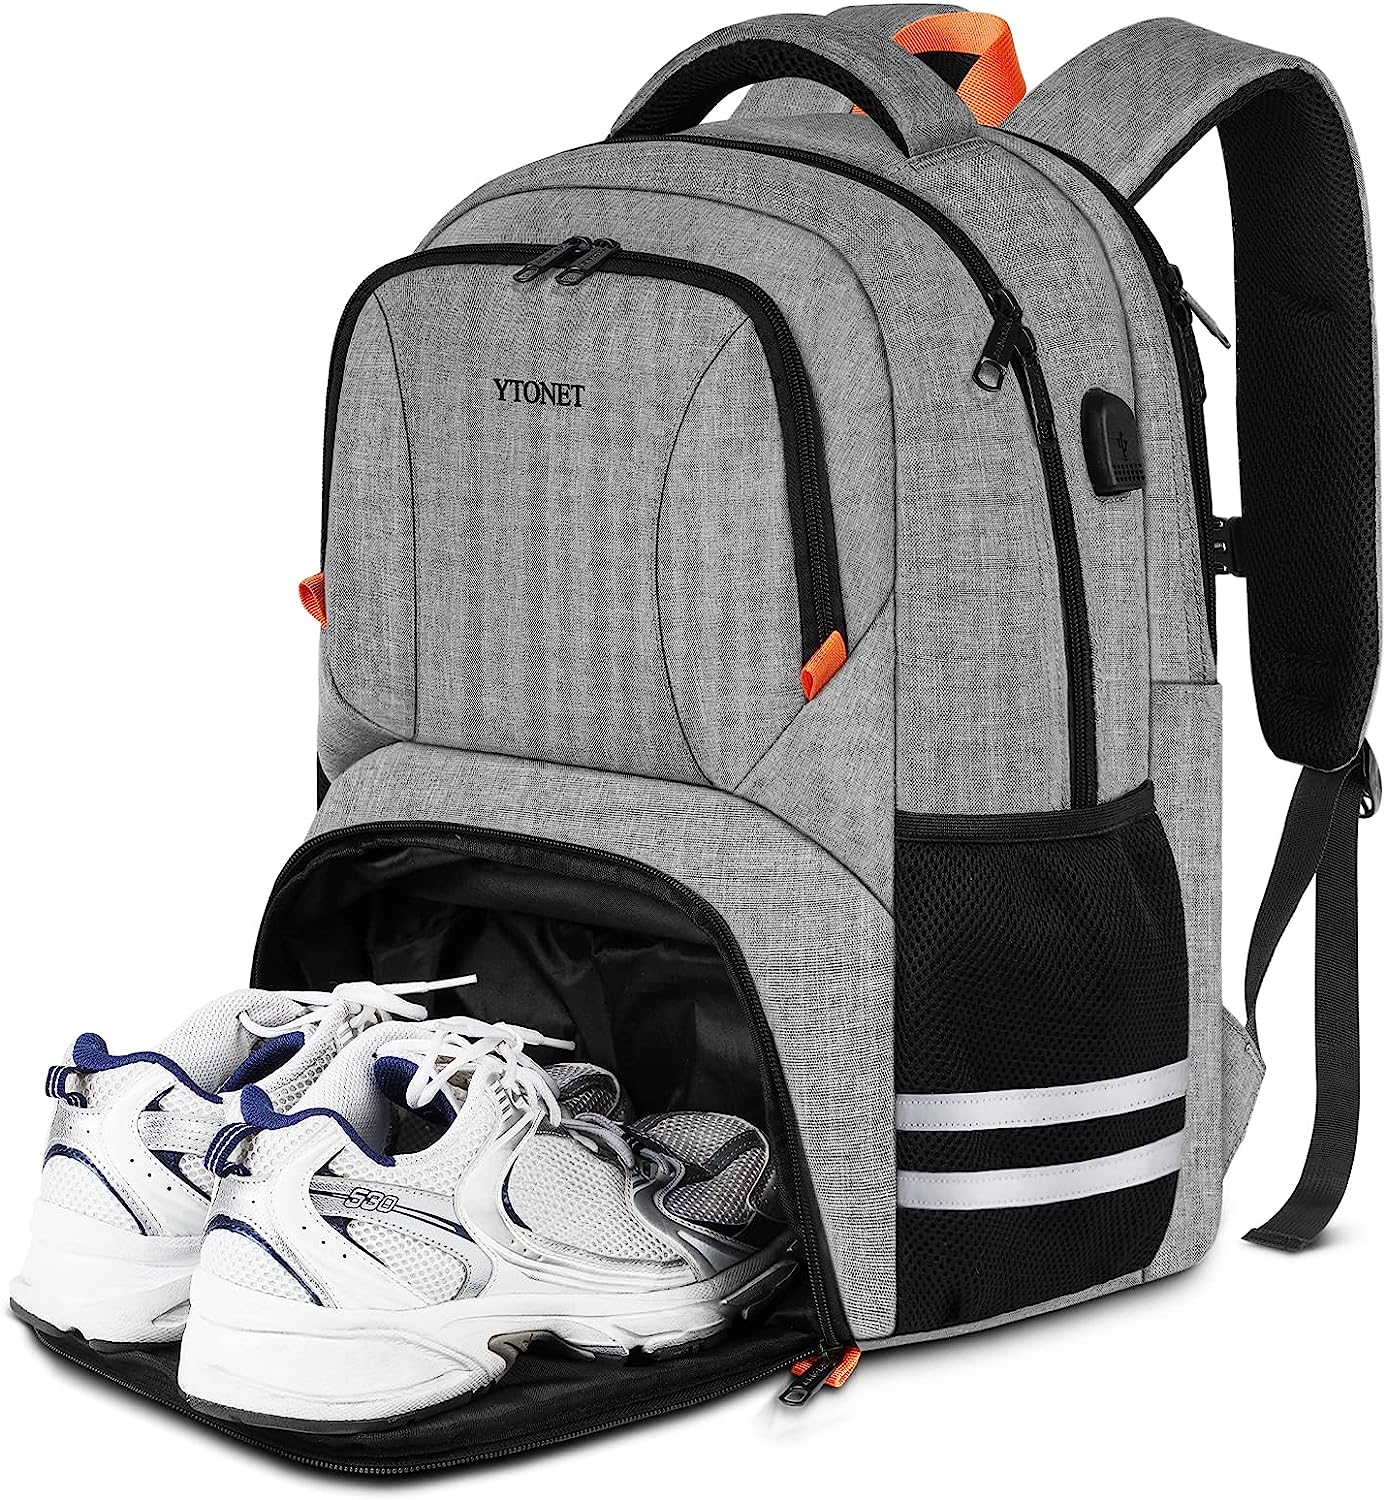 Ytonet Gym Backpack For Men Women, Travel Backpack [...]